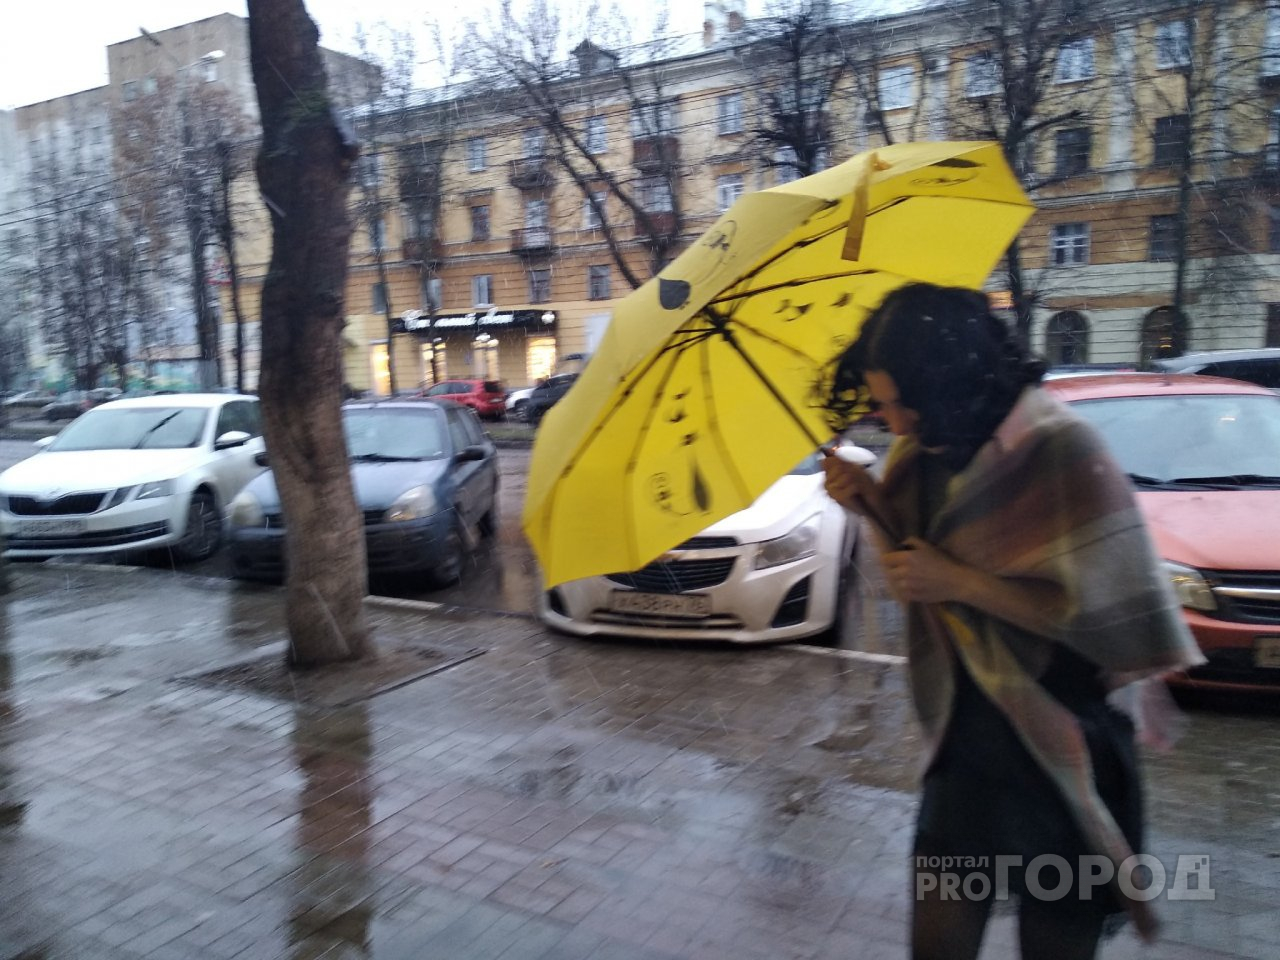 Спасайтесь дома: непогоду обещают в длинные выходные в Ярославле